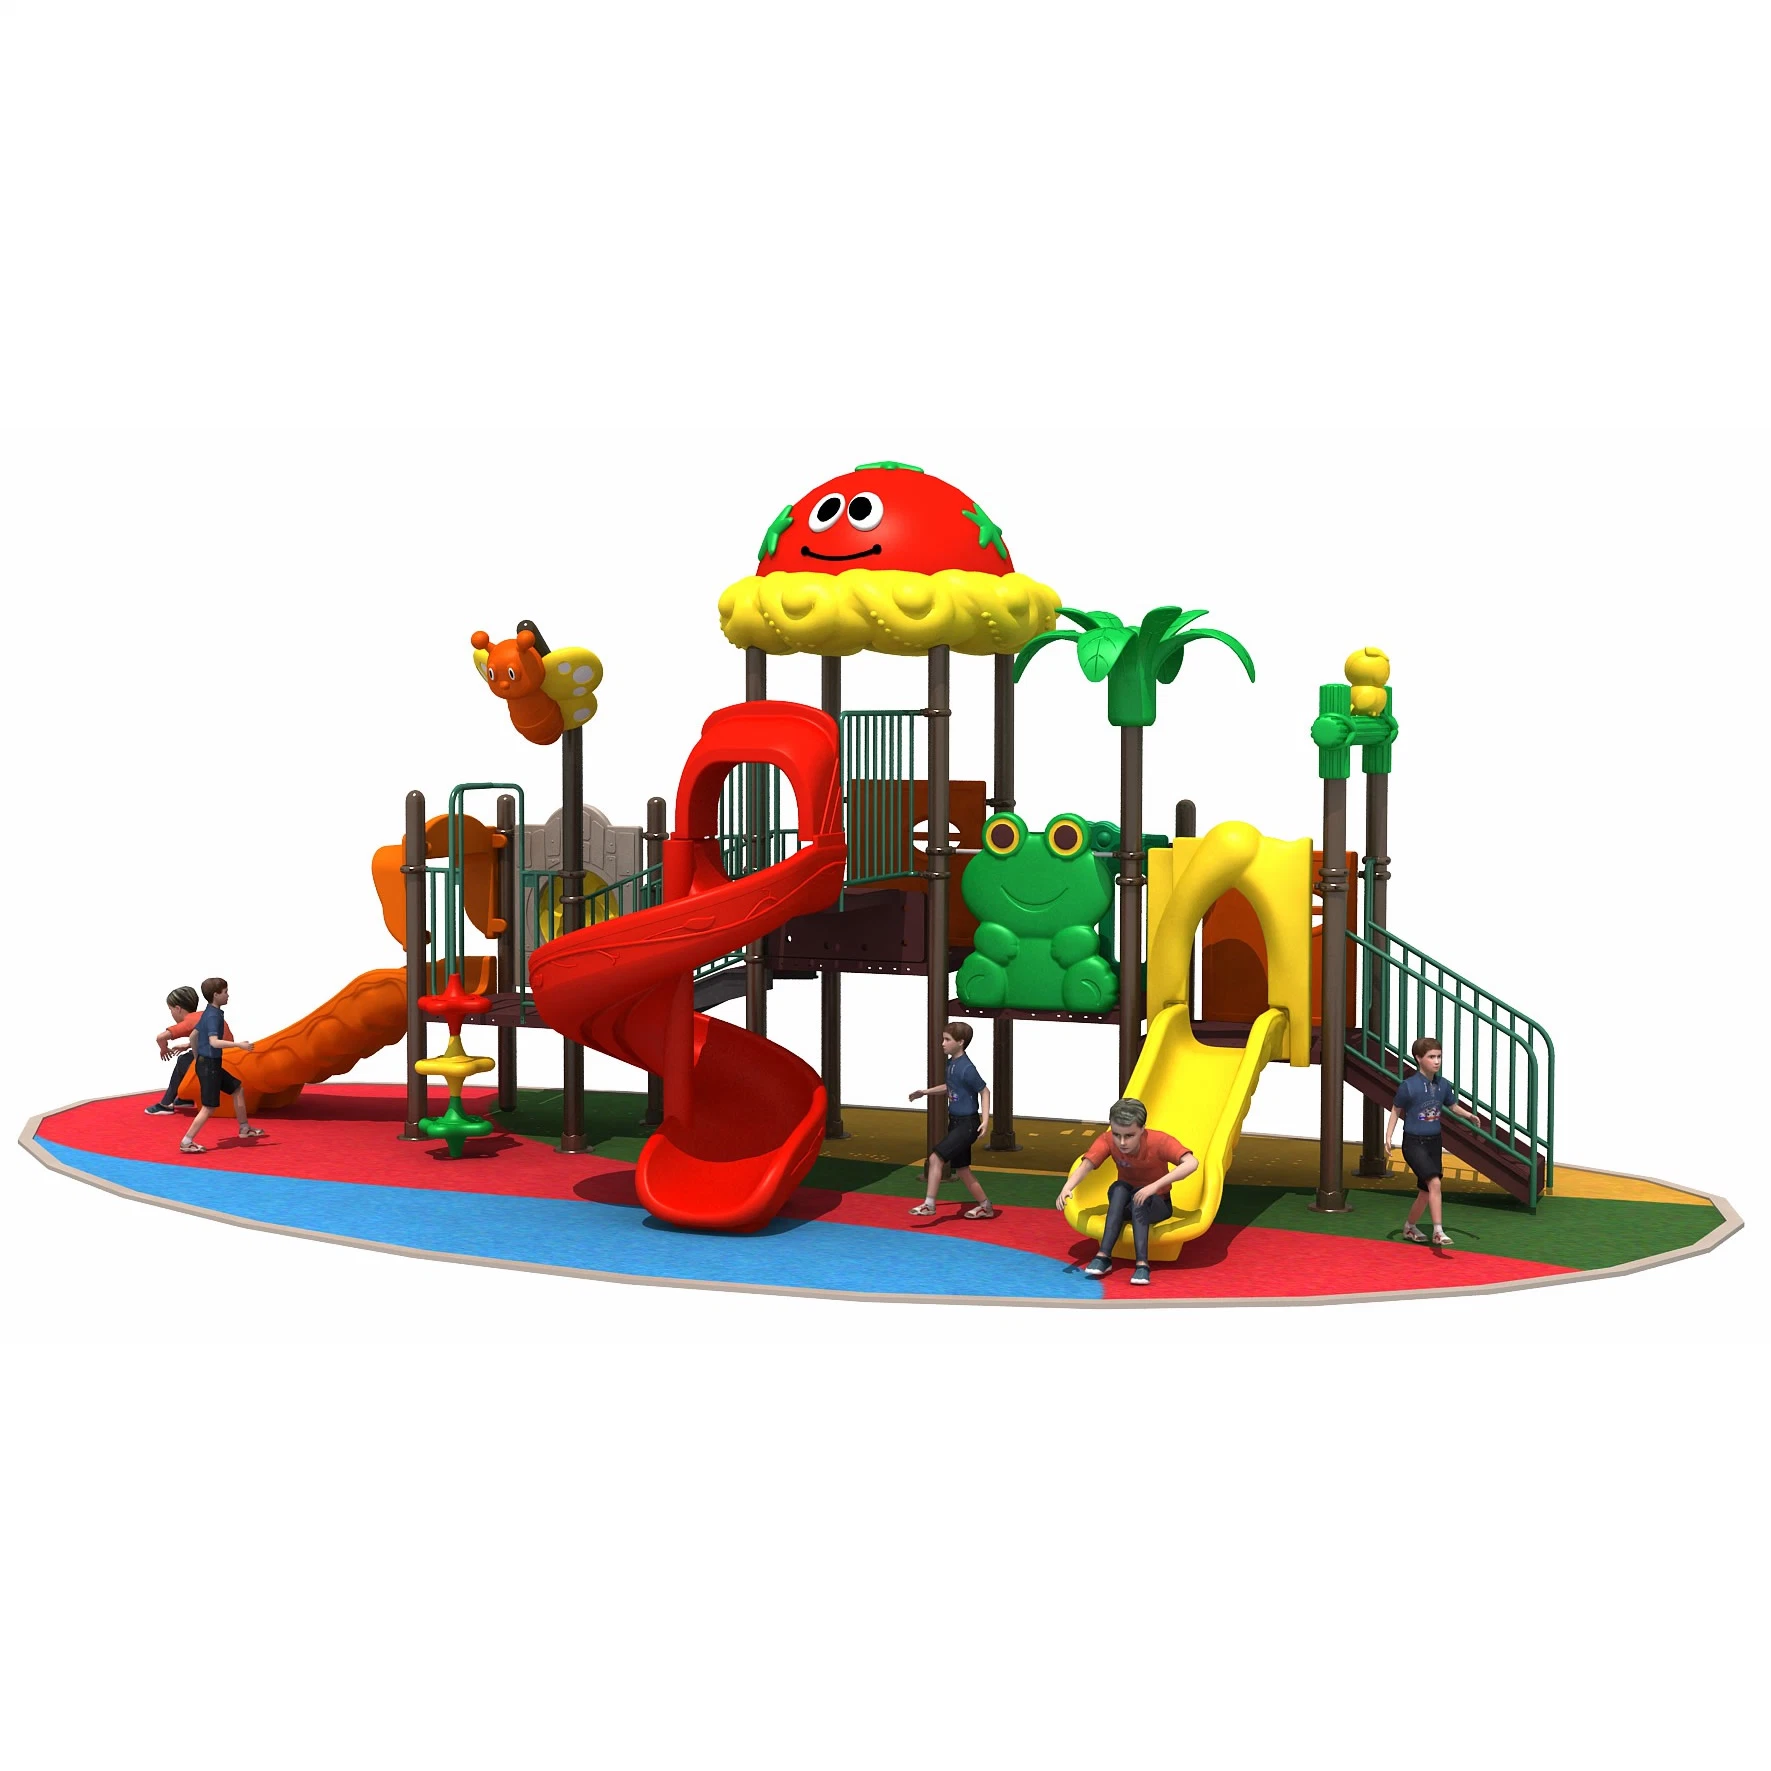 Kinder Plastic Slide Used Park Spielen Spiele Freizeitpark Im Freien Spielplatz